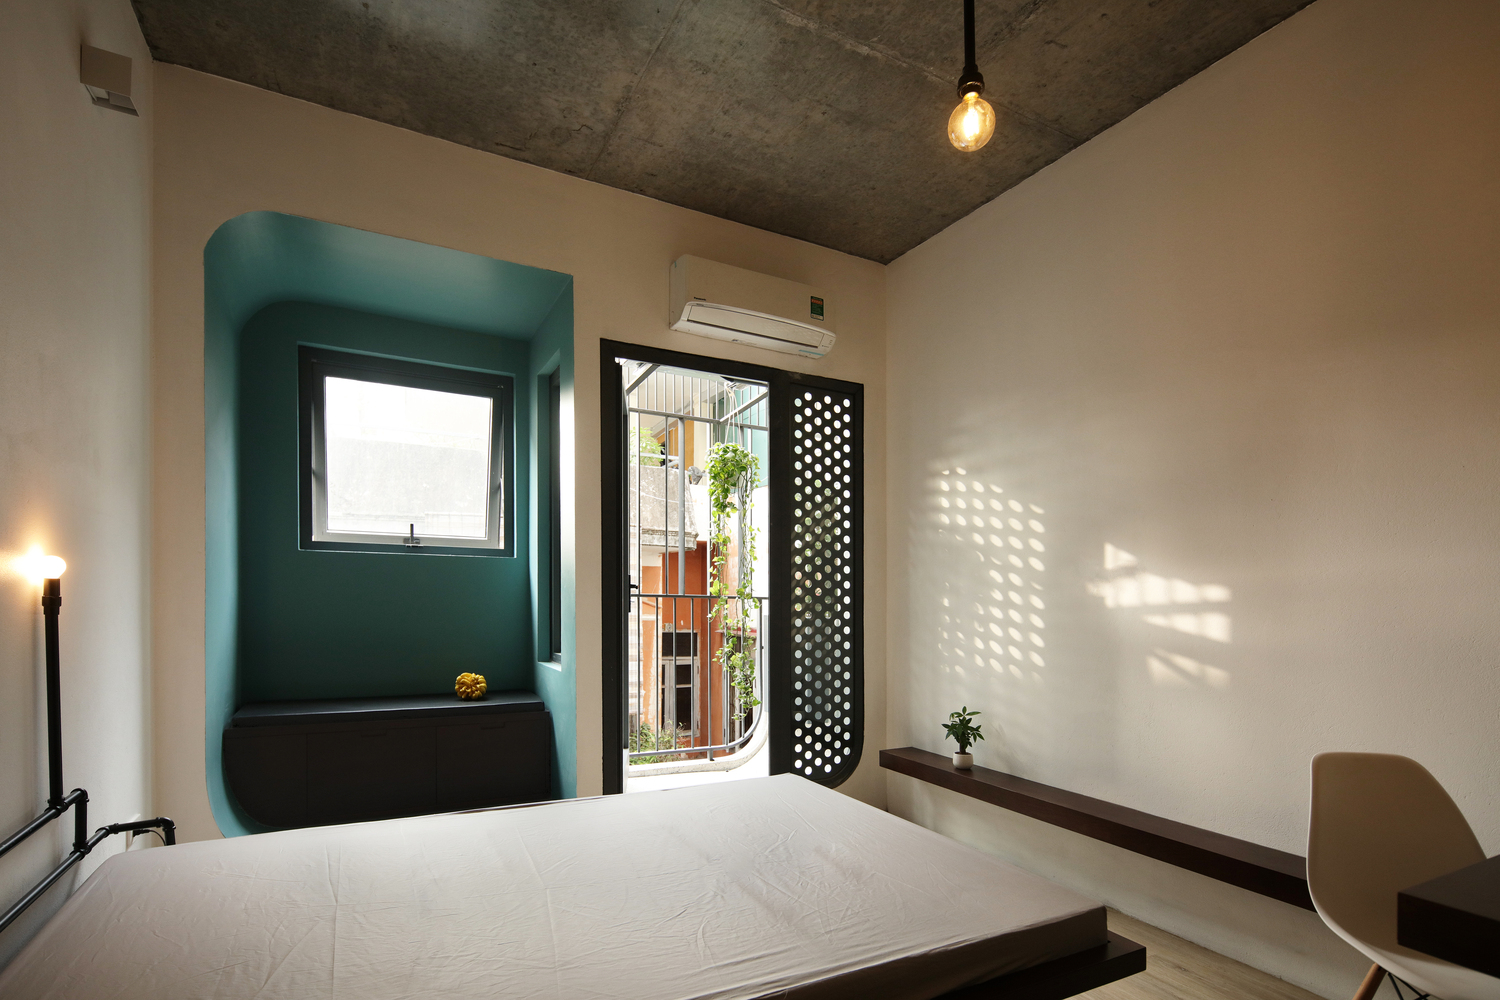 Hình ảnh phòng ngủ đơn giản với mảng tường màu xanh nhạt